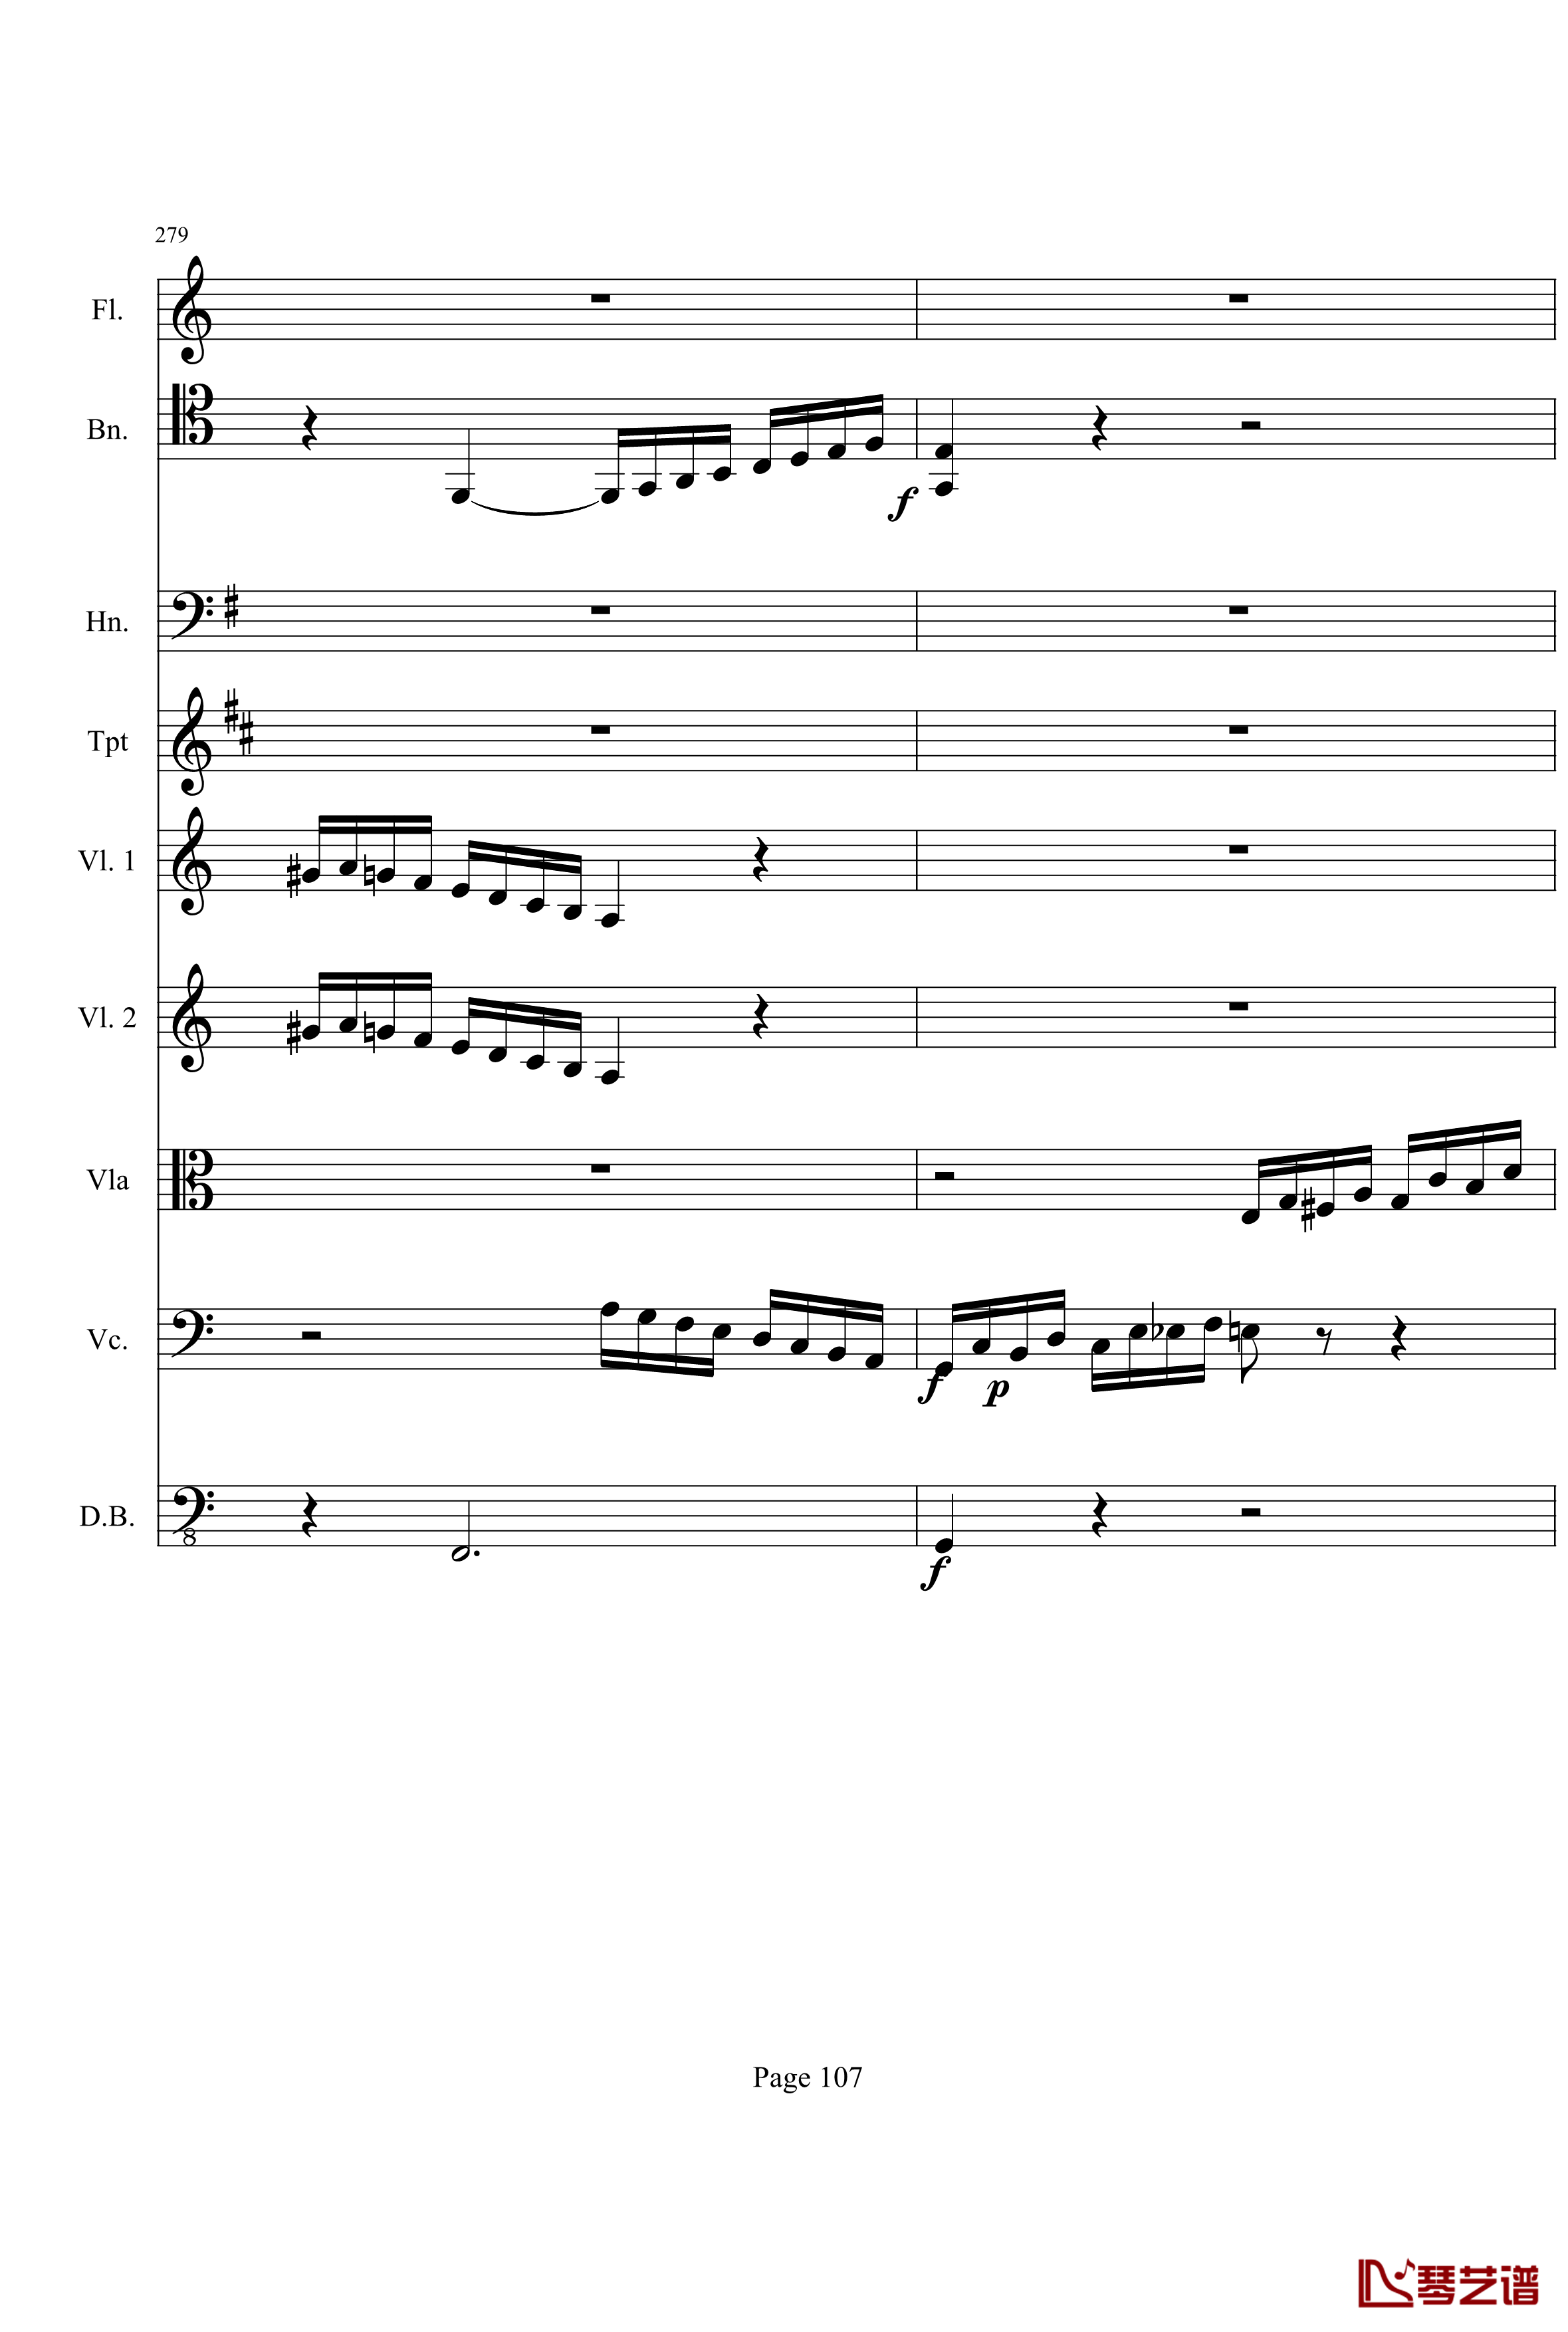 奏鸣曲之交响钢琴谱-第21首-Ⅰ-贝多芬-beethoven107